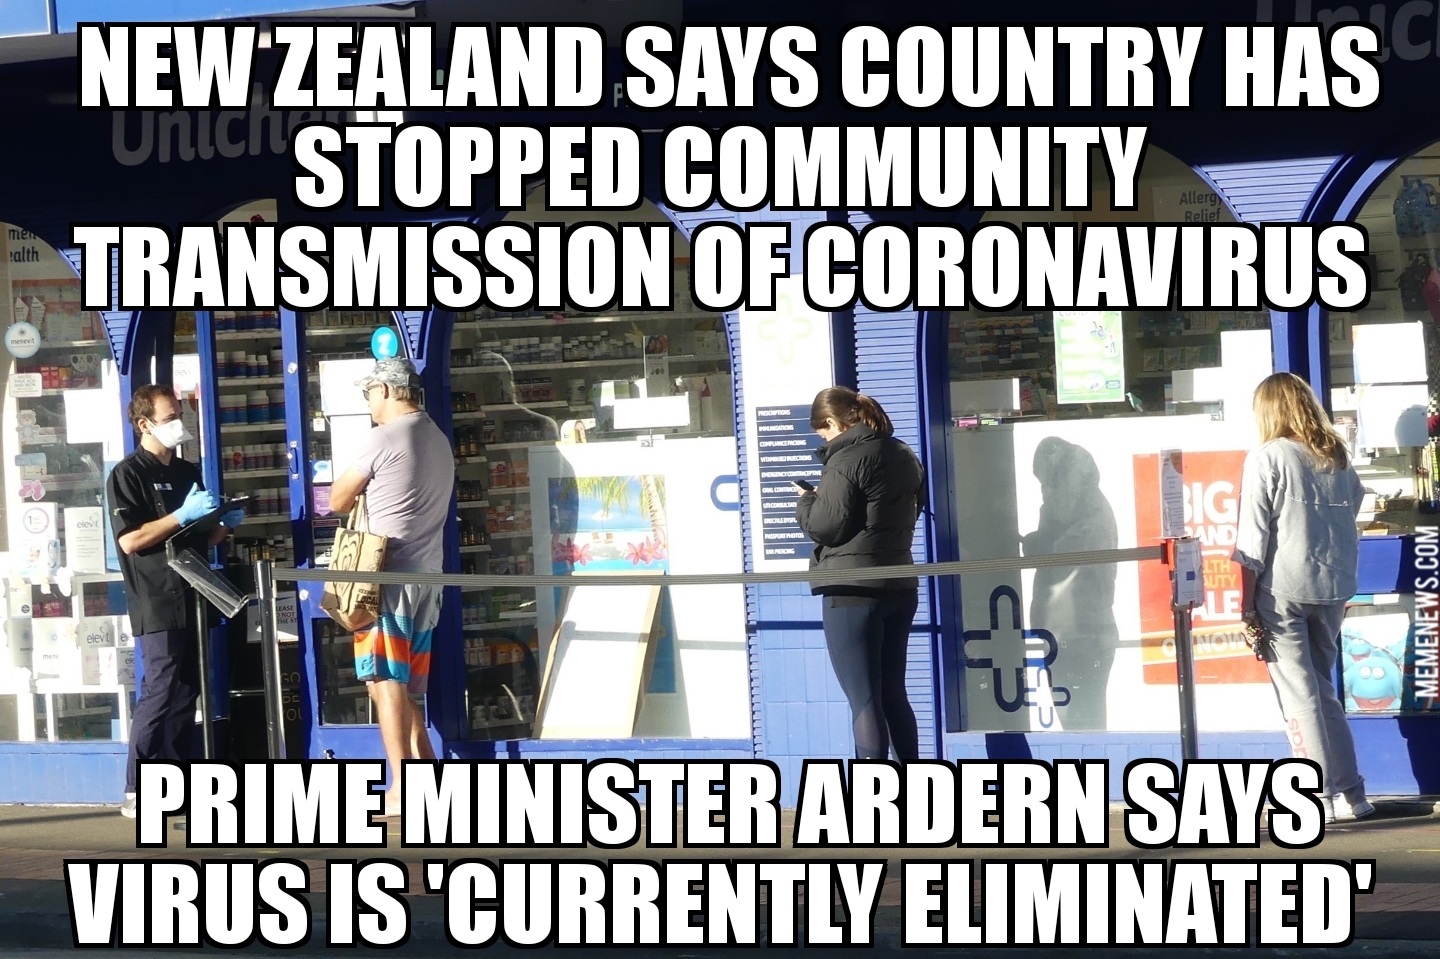 New Zealand says coronavirus ‘currently eliminated’